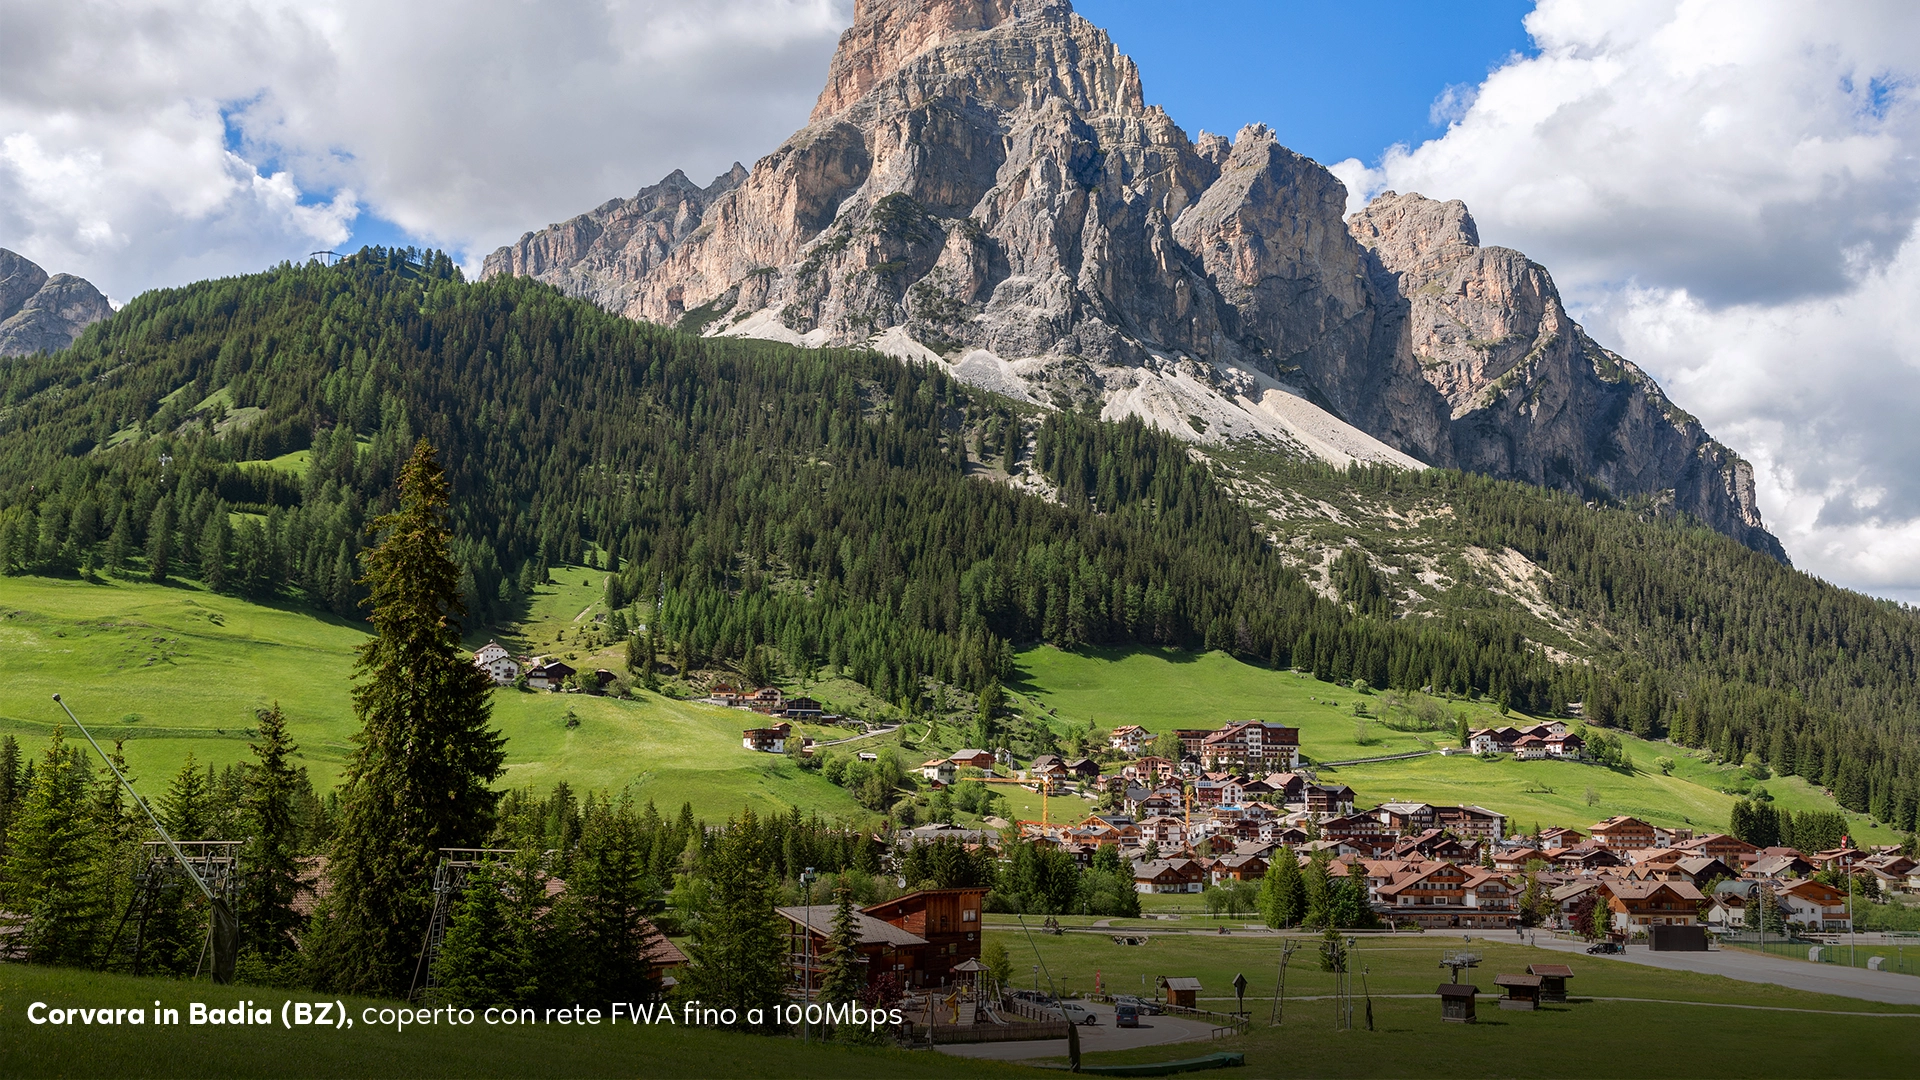 Corvara in Badia, meta turistica delle Dolomiti, è ora coperta da rete a 100 Mbps